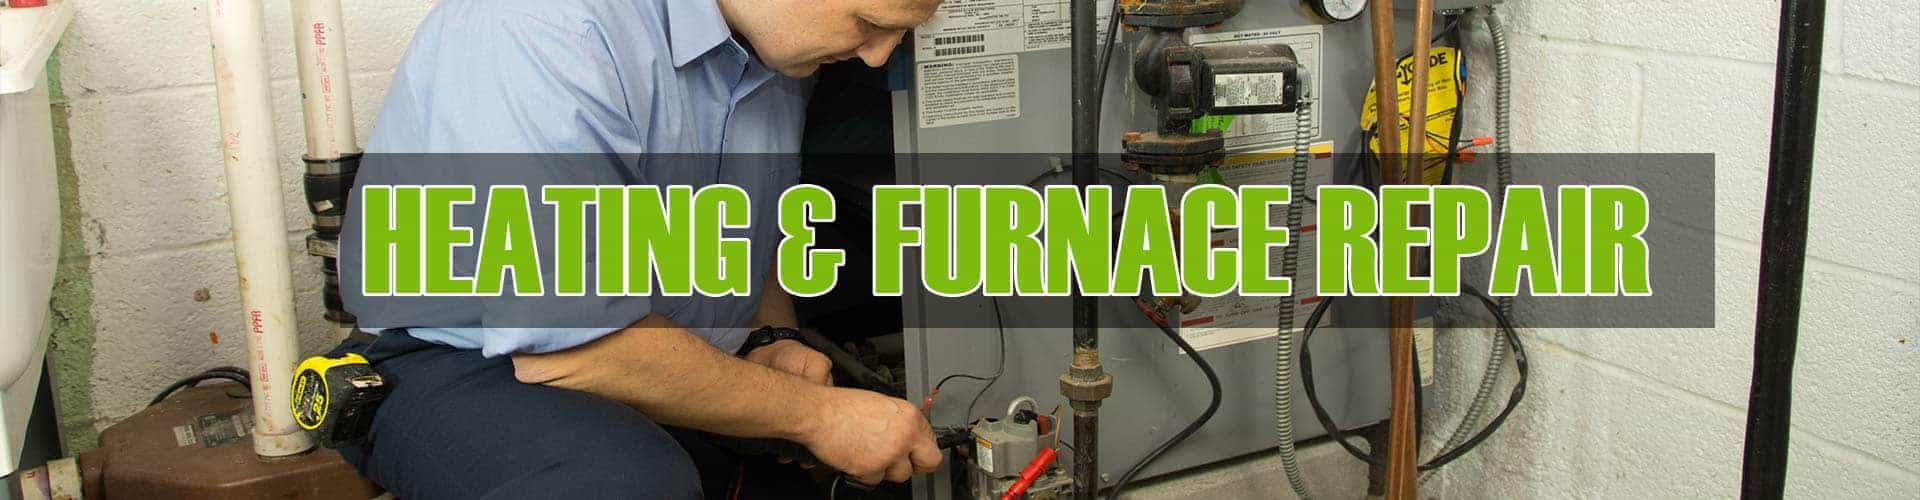 Furnace & Heating Repair in Elgin, Illinois 